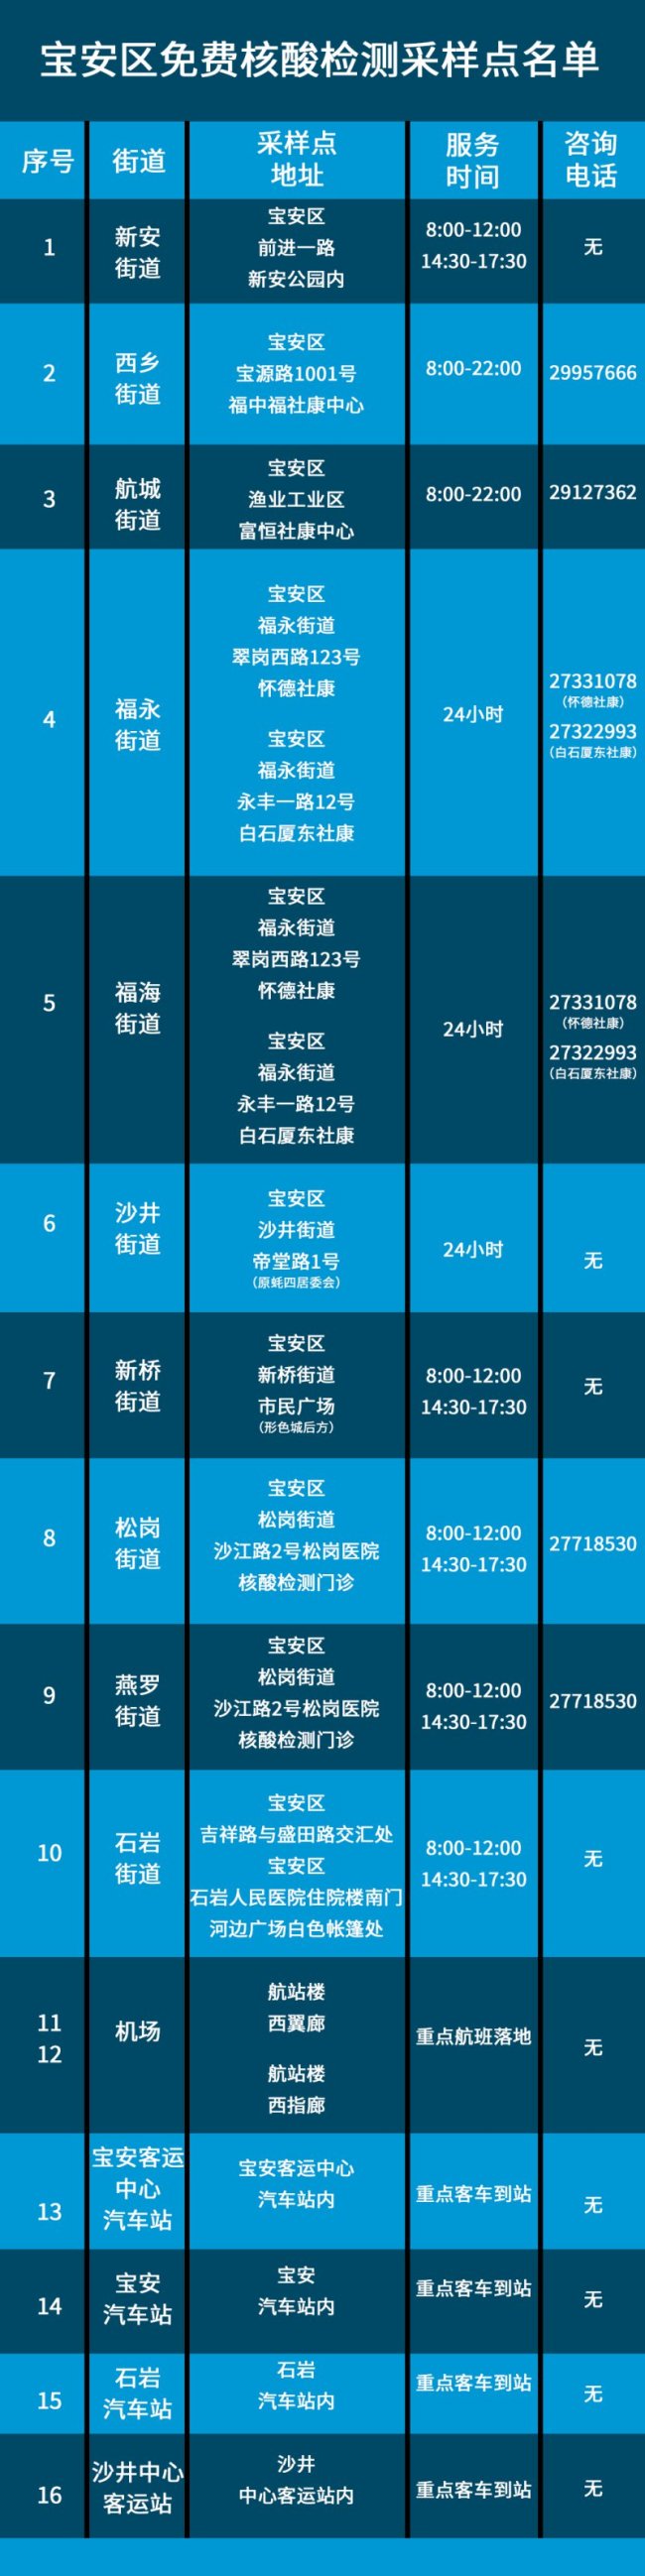 深圳宝安区2021年免费核酸检测采样点地址一览表